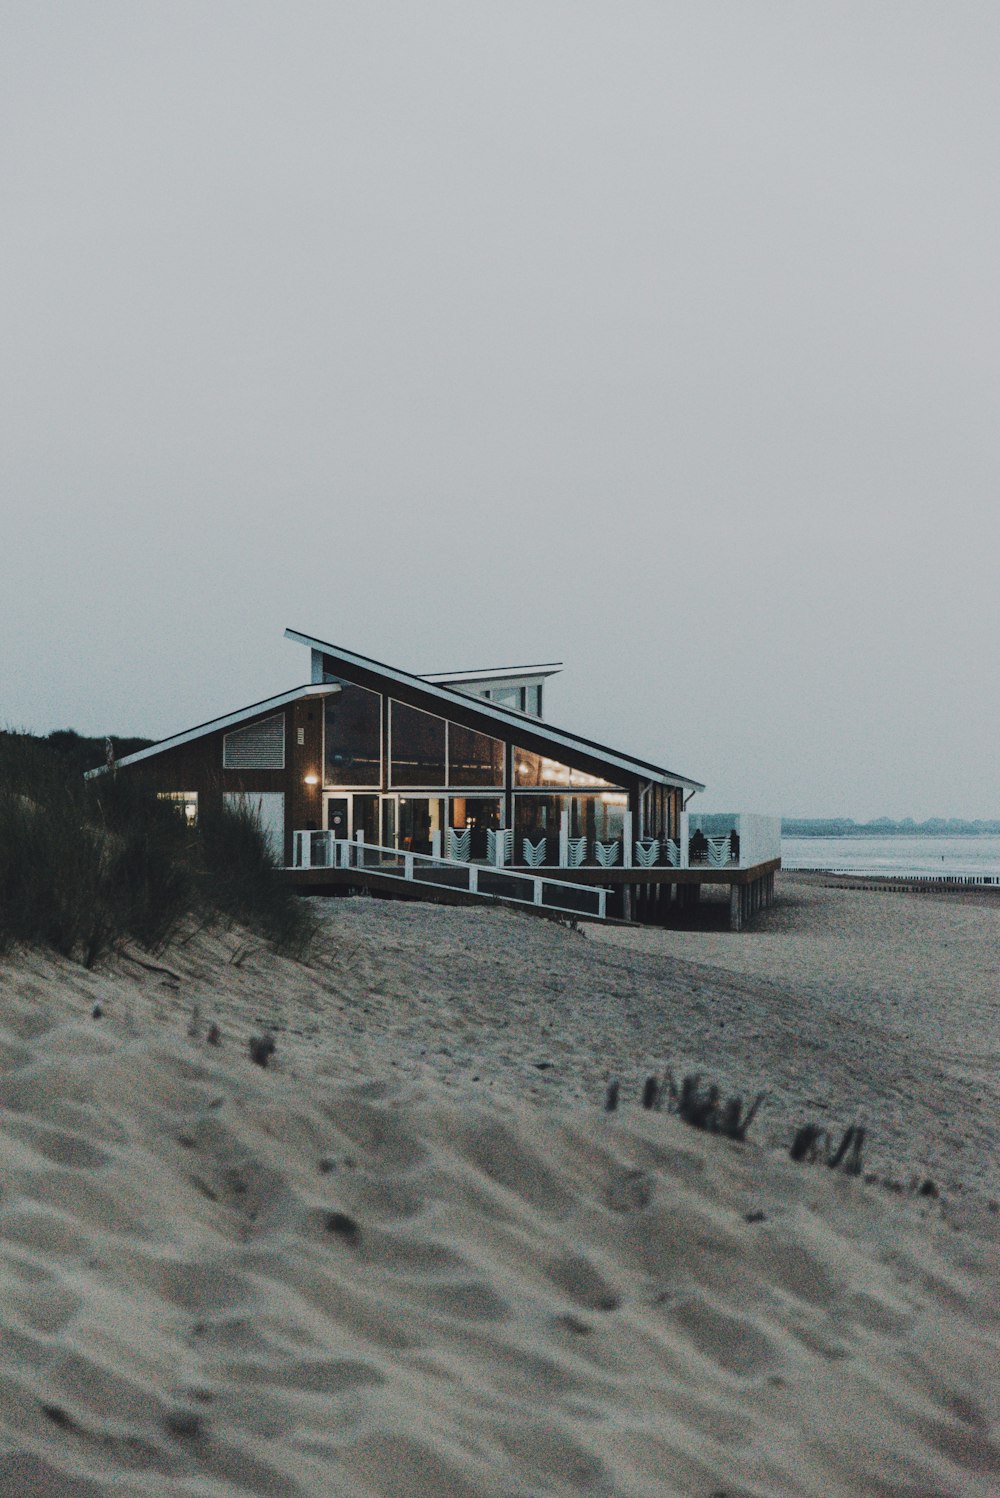 Casa de madera marrón en la playa durante el día